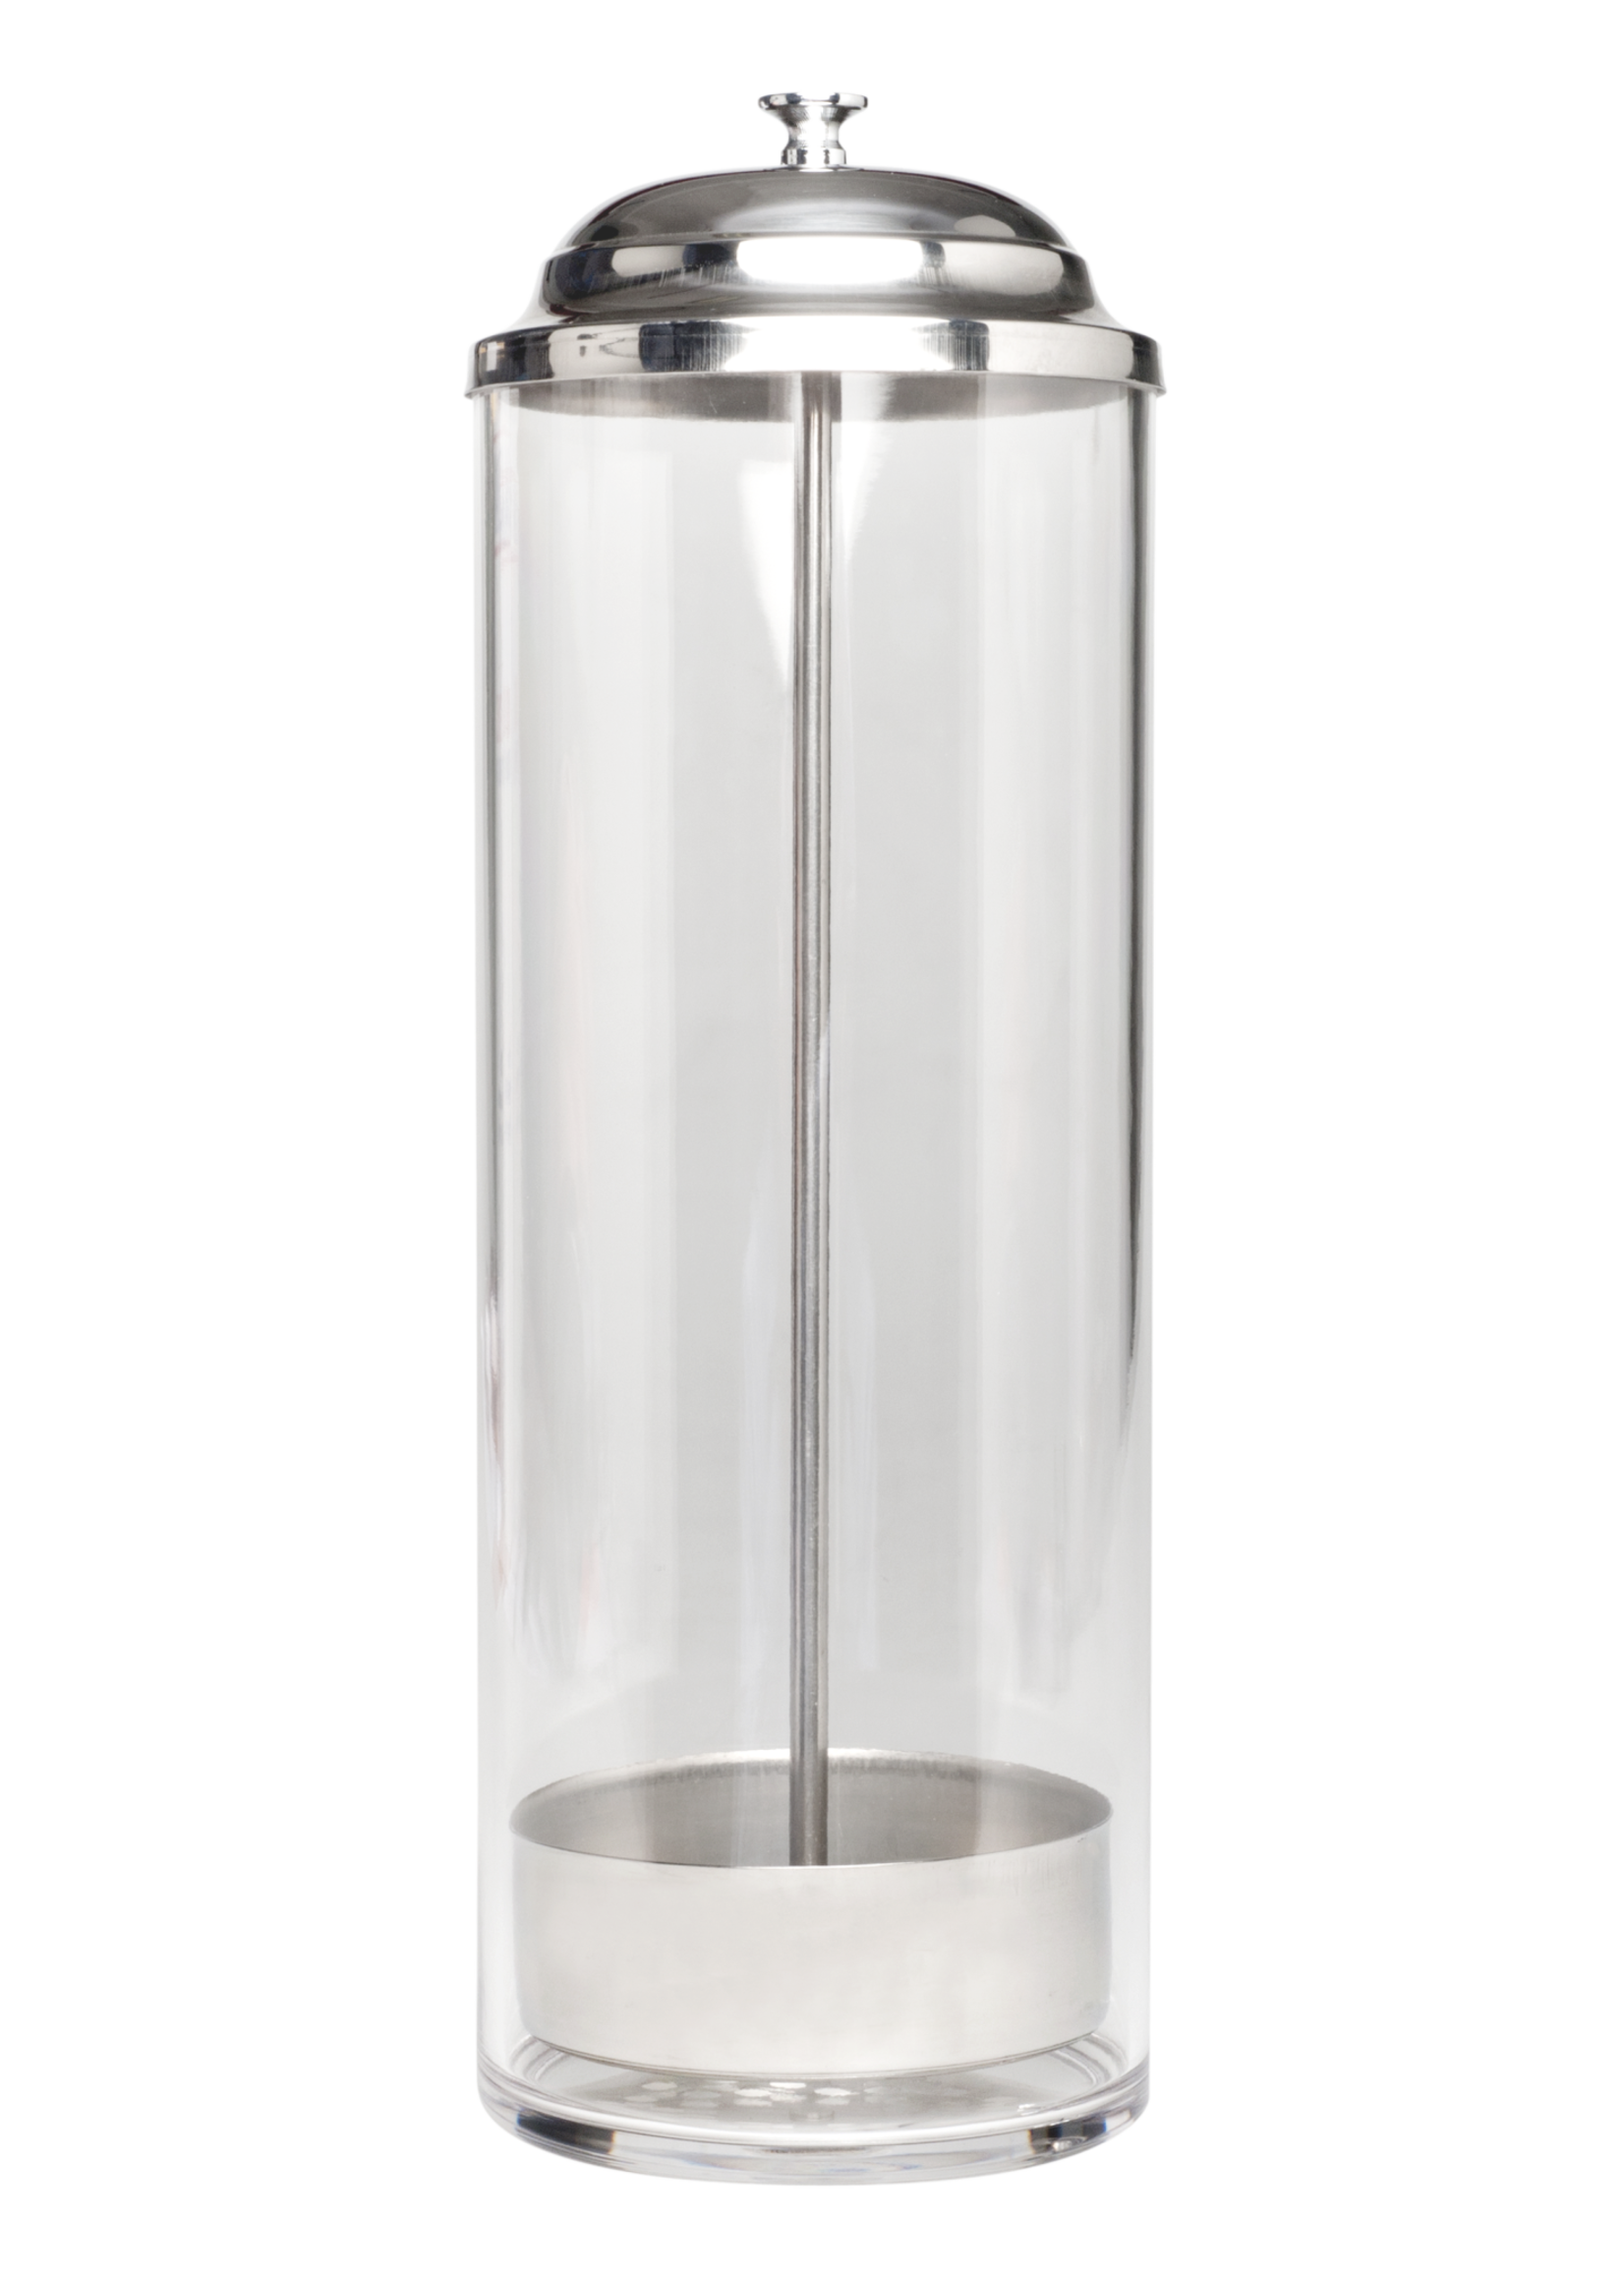 Iceman Iceman Acrylic Sterilizer Jar 1.2L